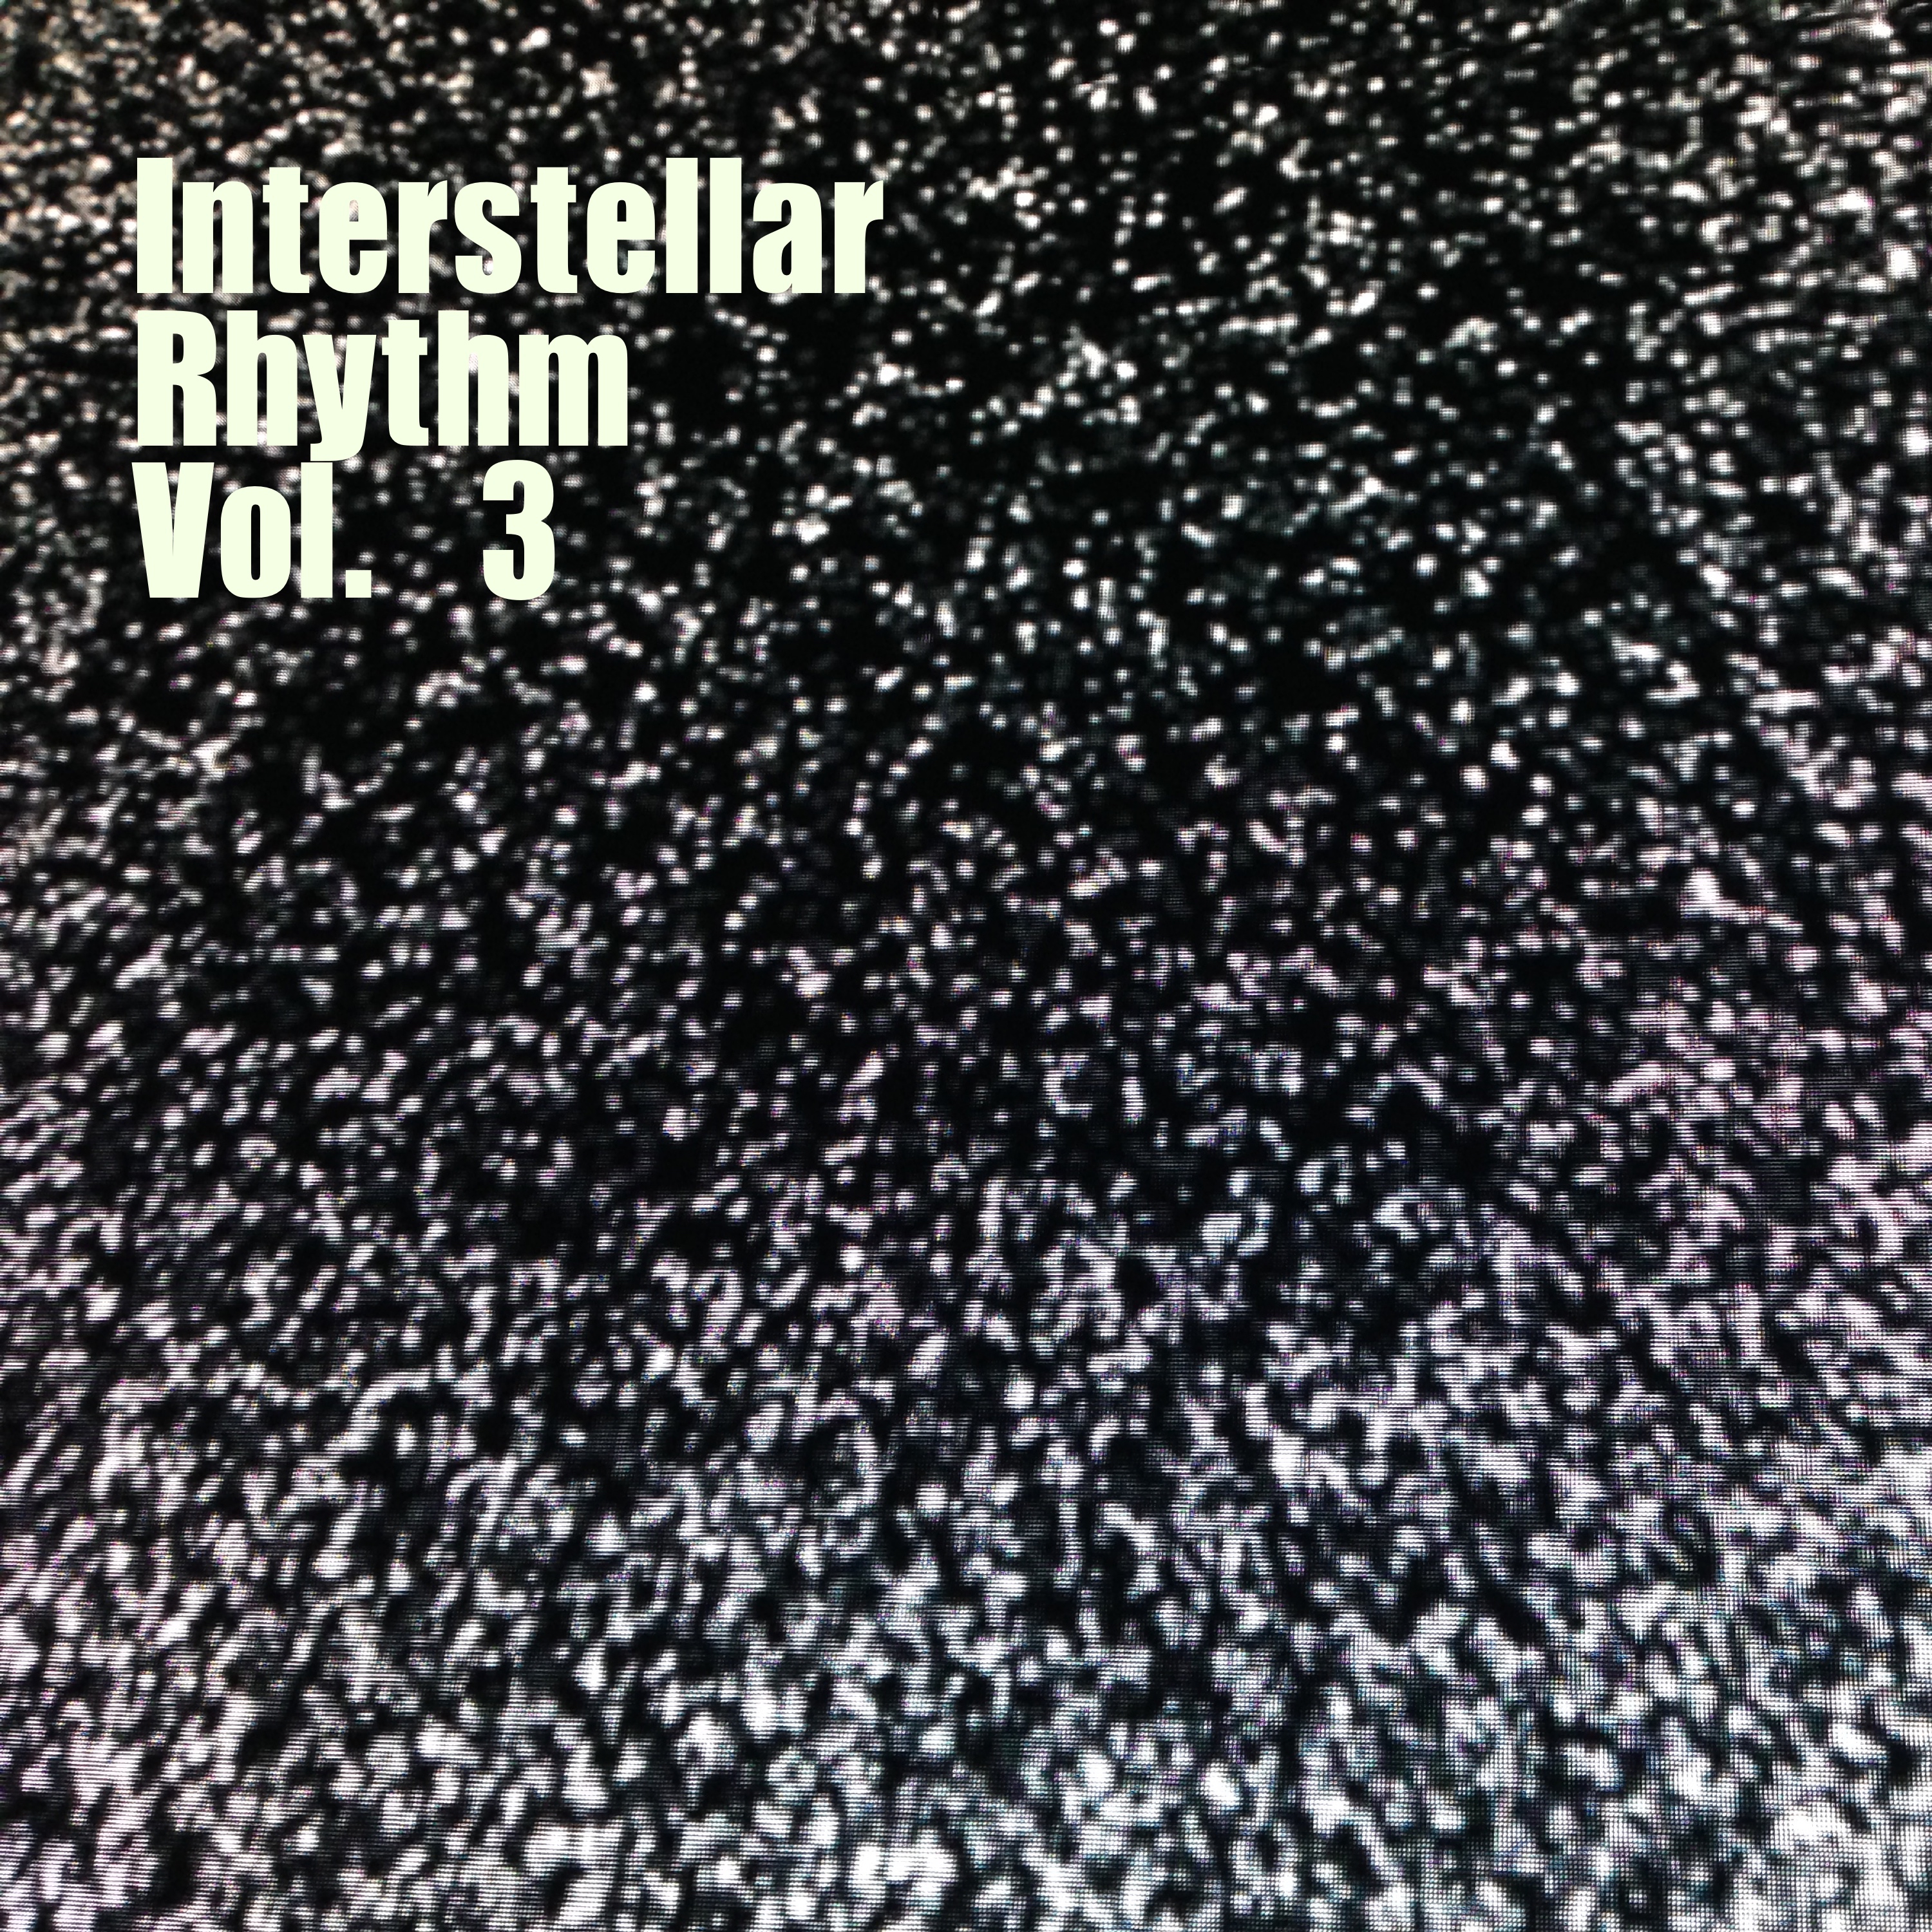 Interstellar Rhythm, Vol. 3